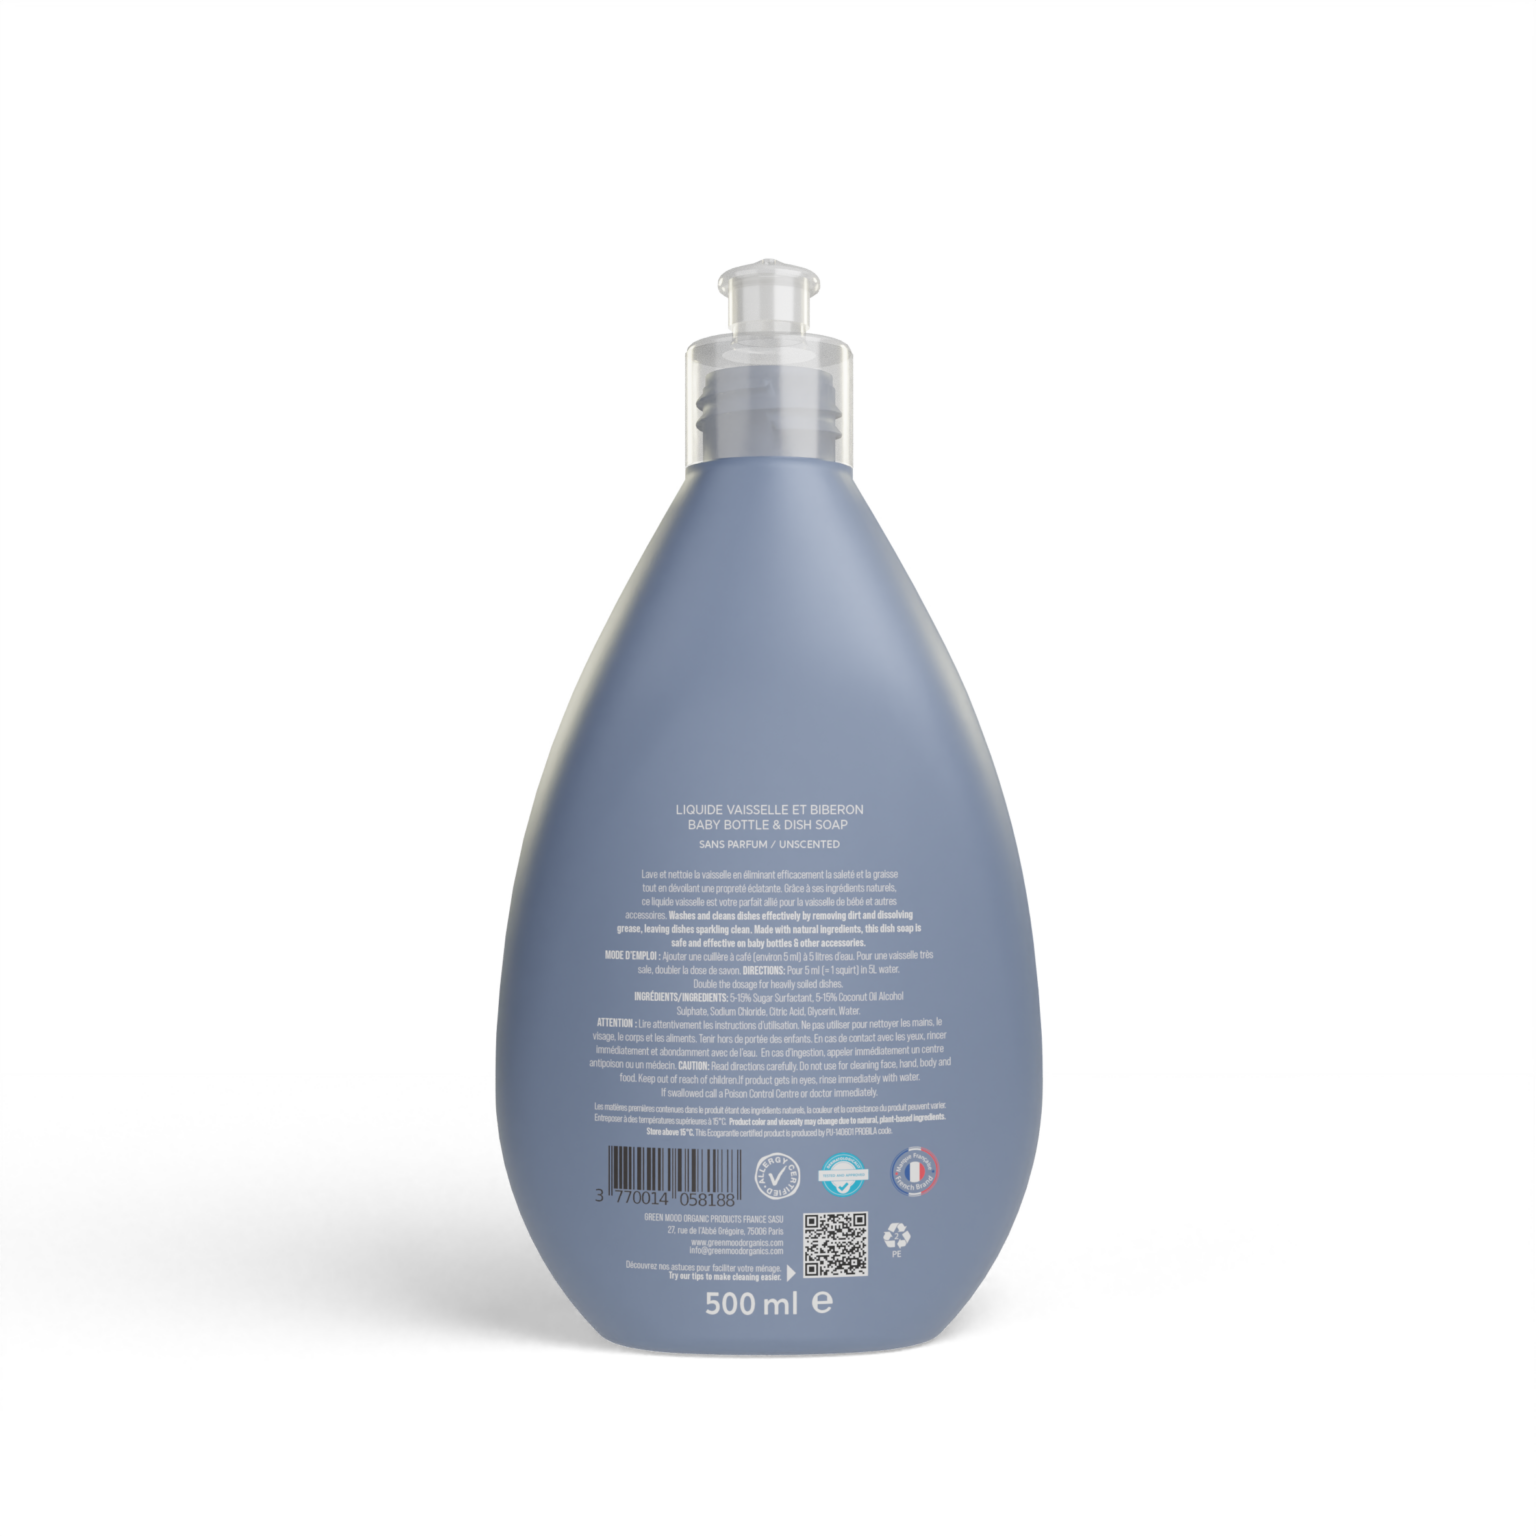 Liquide vaisselle écologique BEBE CONFORT : la bouteille de 500ml à Prix  Carrefour